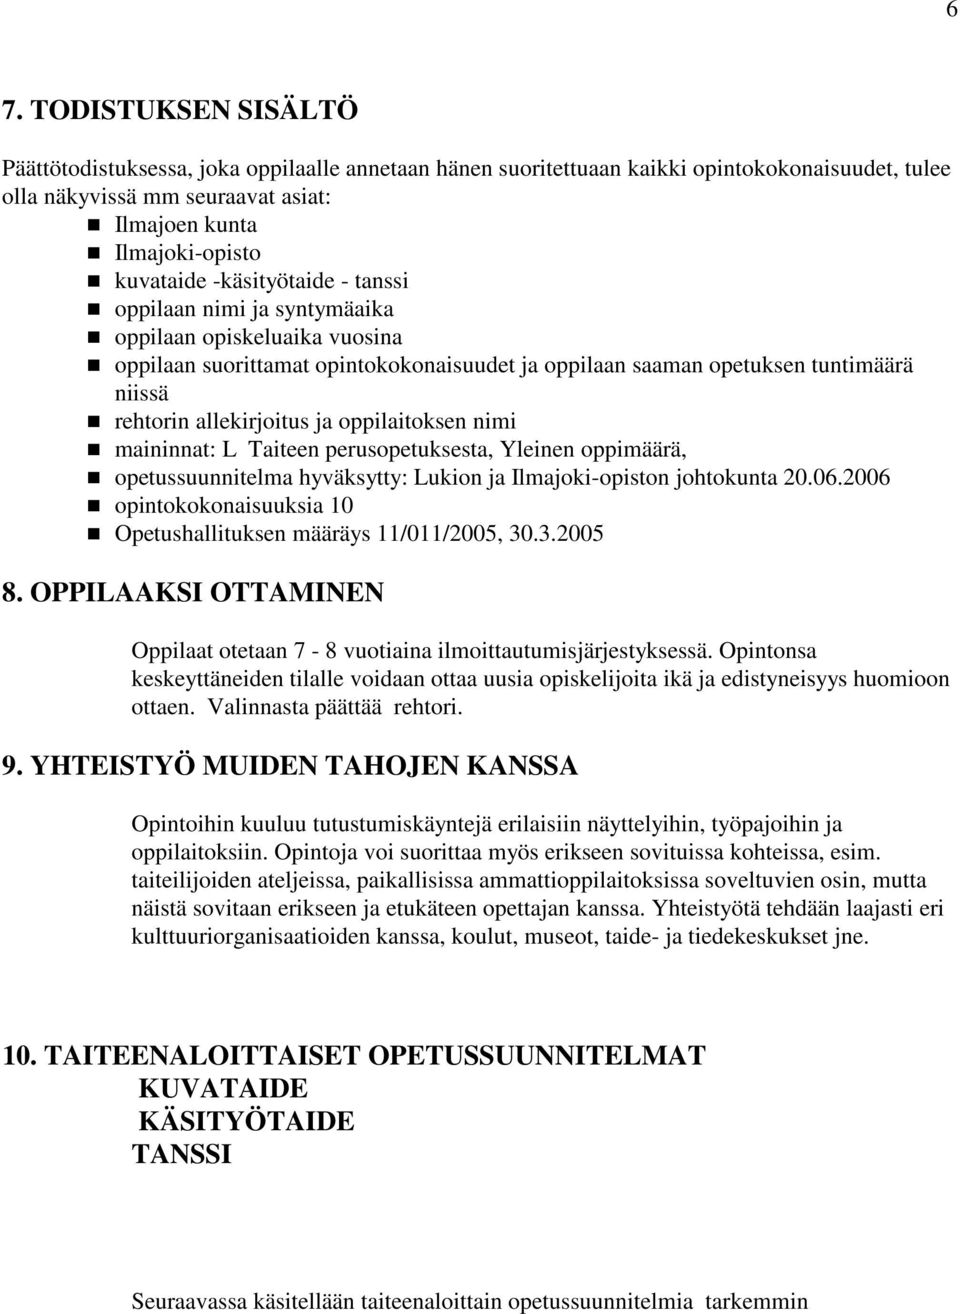 allekirjoitus ja oppilaitoksen nimi maininnat: L Taiteen perusopetuksesta, Yleinen oppimäärä, opetussuunnitelma hyväksytty: Lukion ja Ilmajoki-opiston johtokunta 20.06.